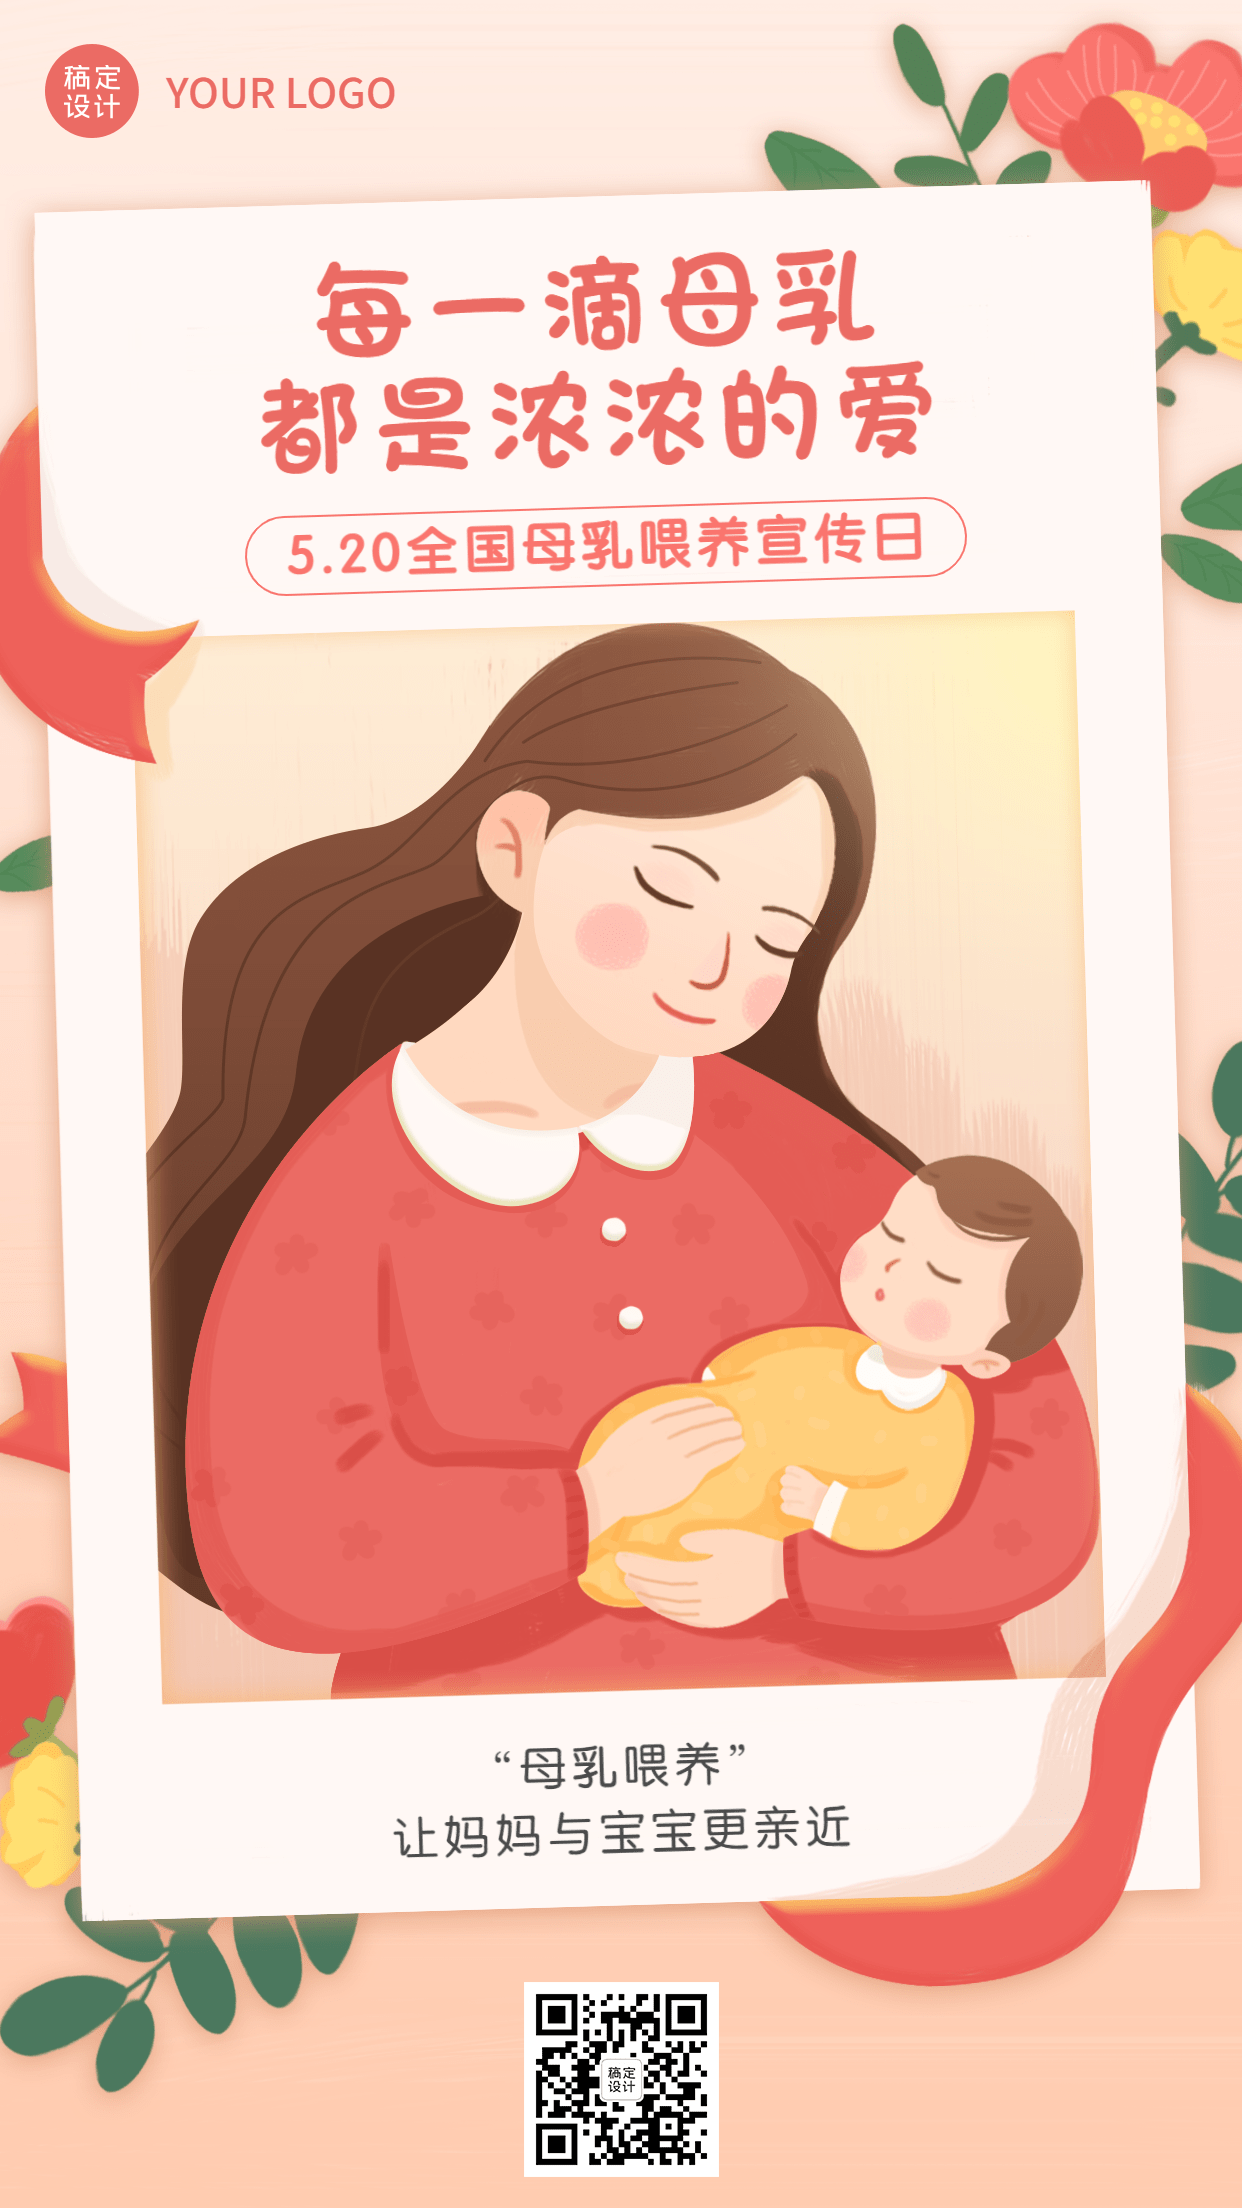 全国母乳喂养宣传日节日宣传手机海报预览效果